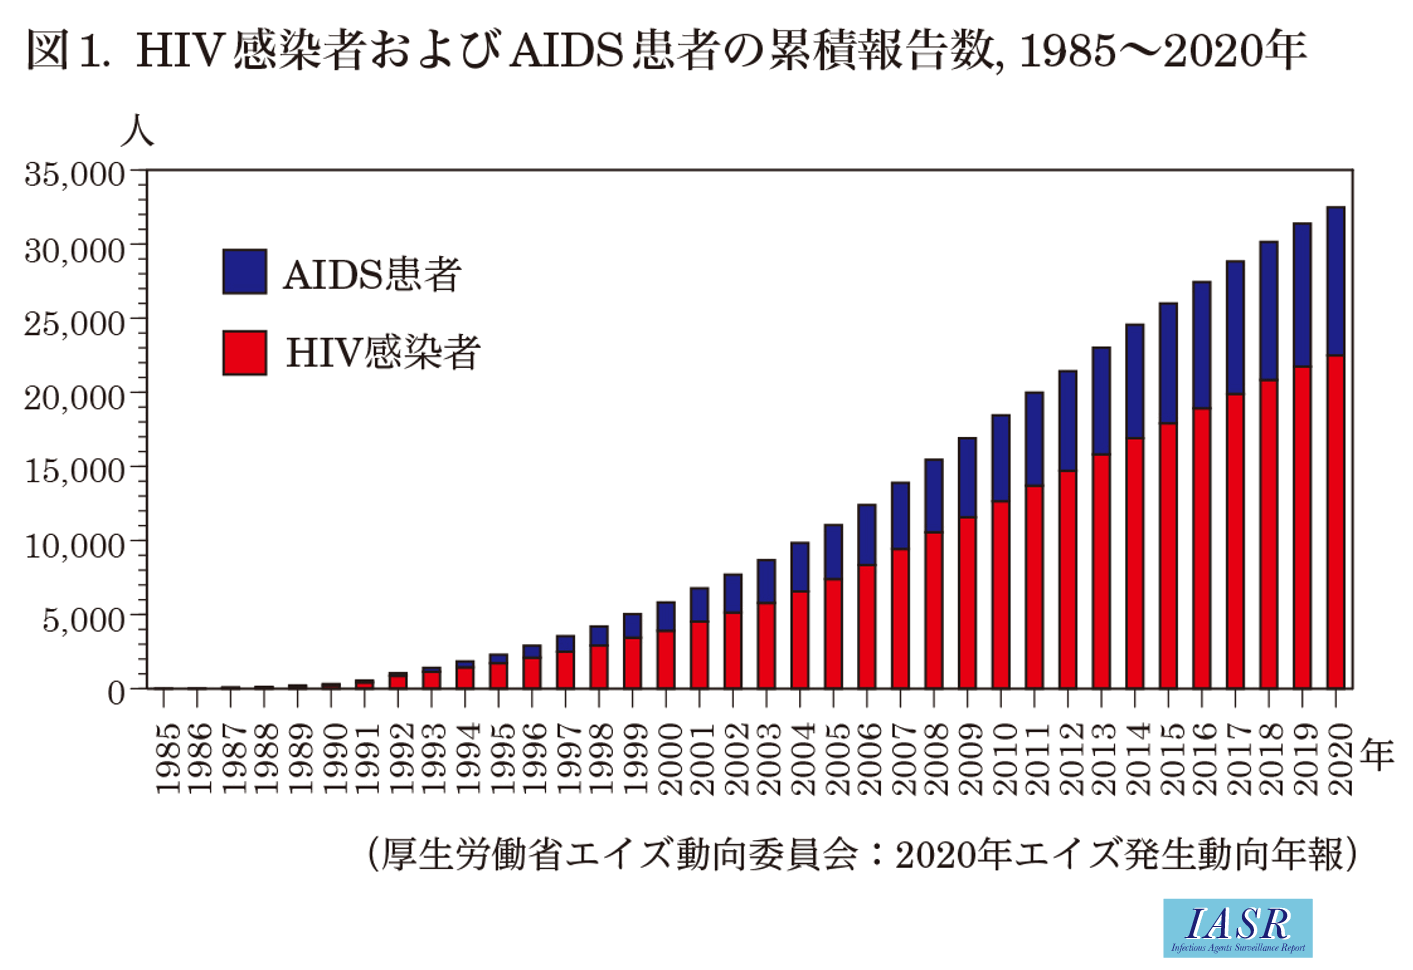 IASR 42(10), 2021【特集】HIV/AIDS 2020年